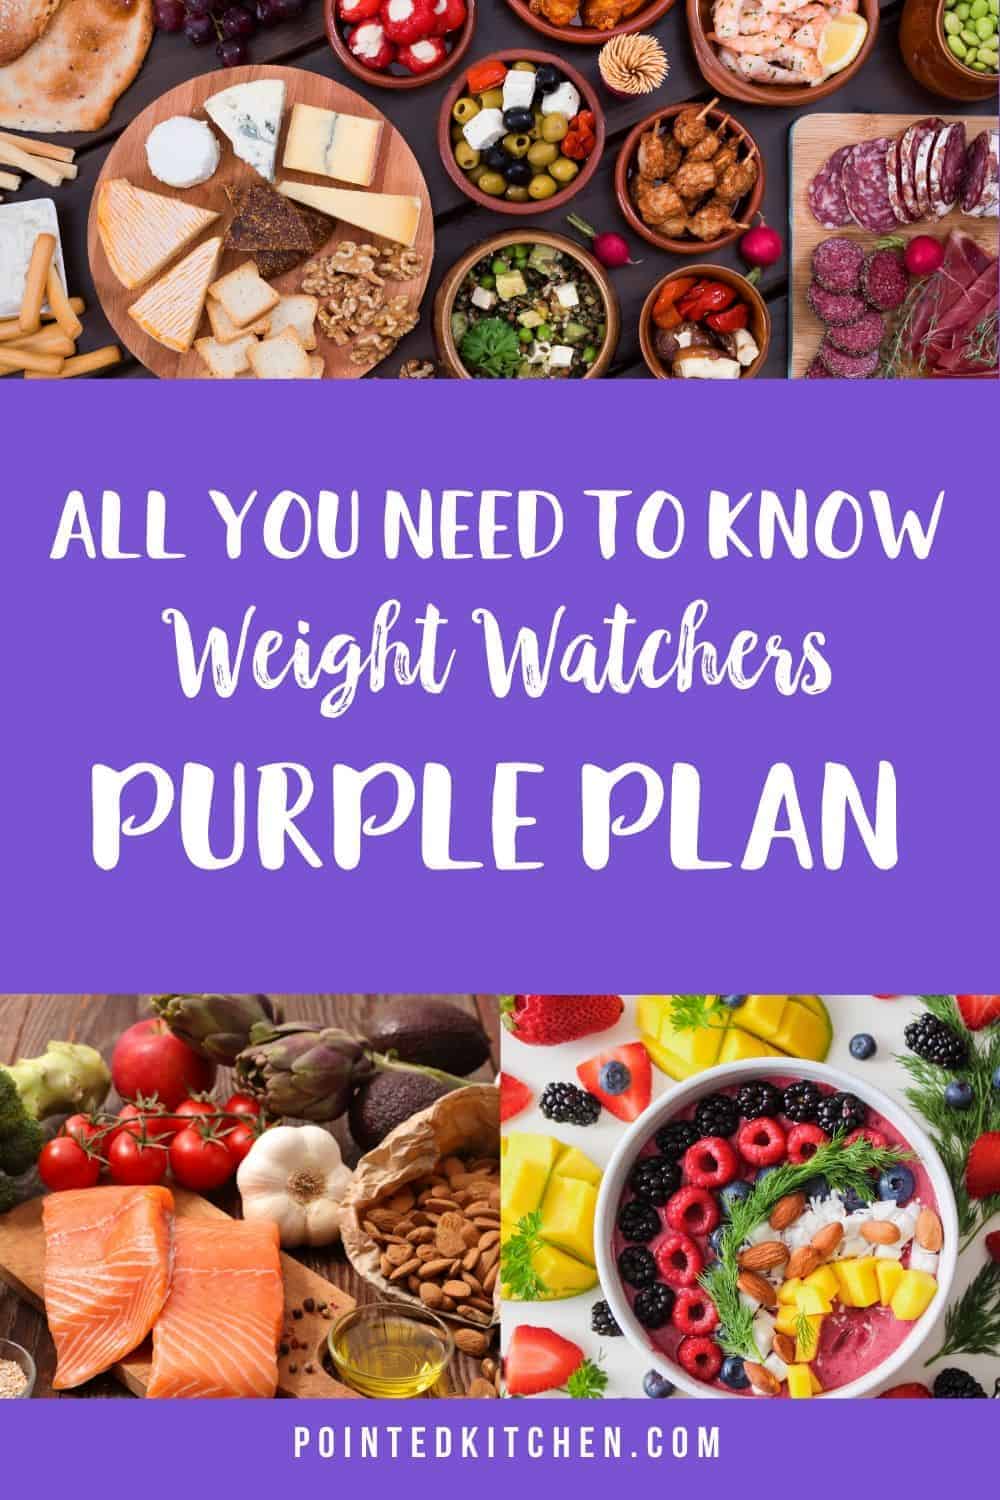 The Weight Watchers Purple Plan Pointed Kitchen